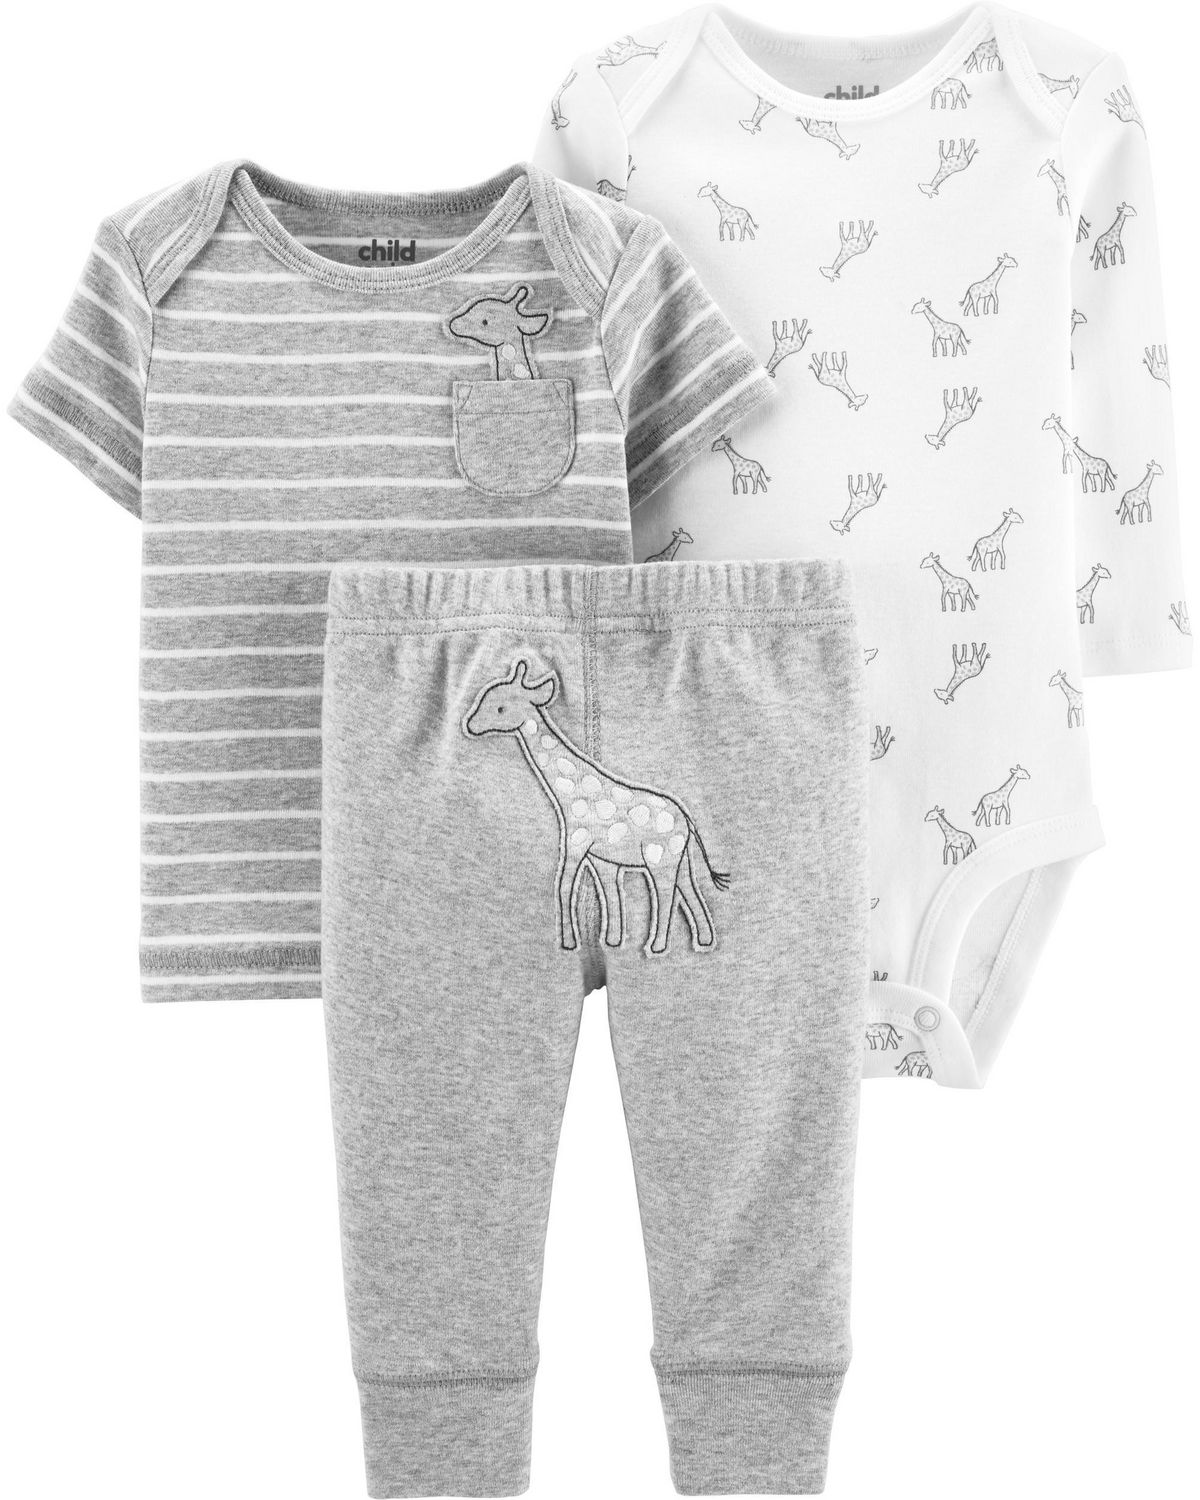 Grey//White Elephant Layette Set Carters Baby Unisex 3-pc